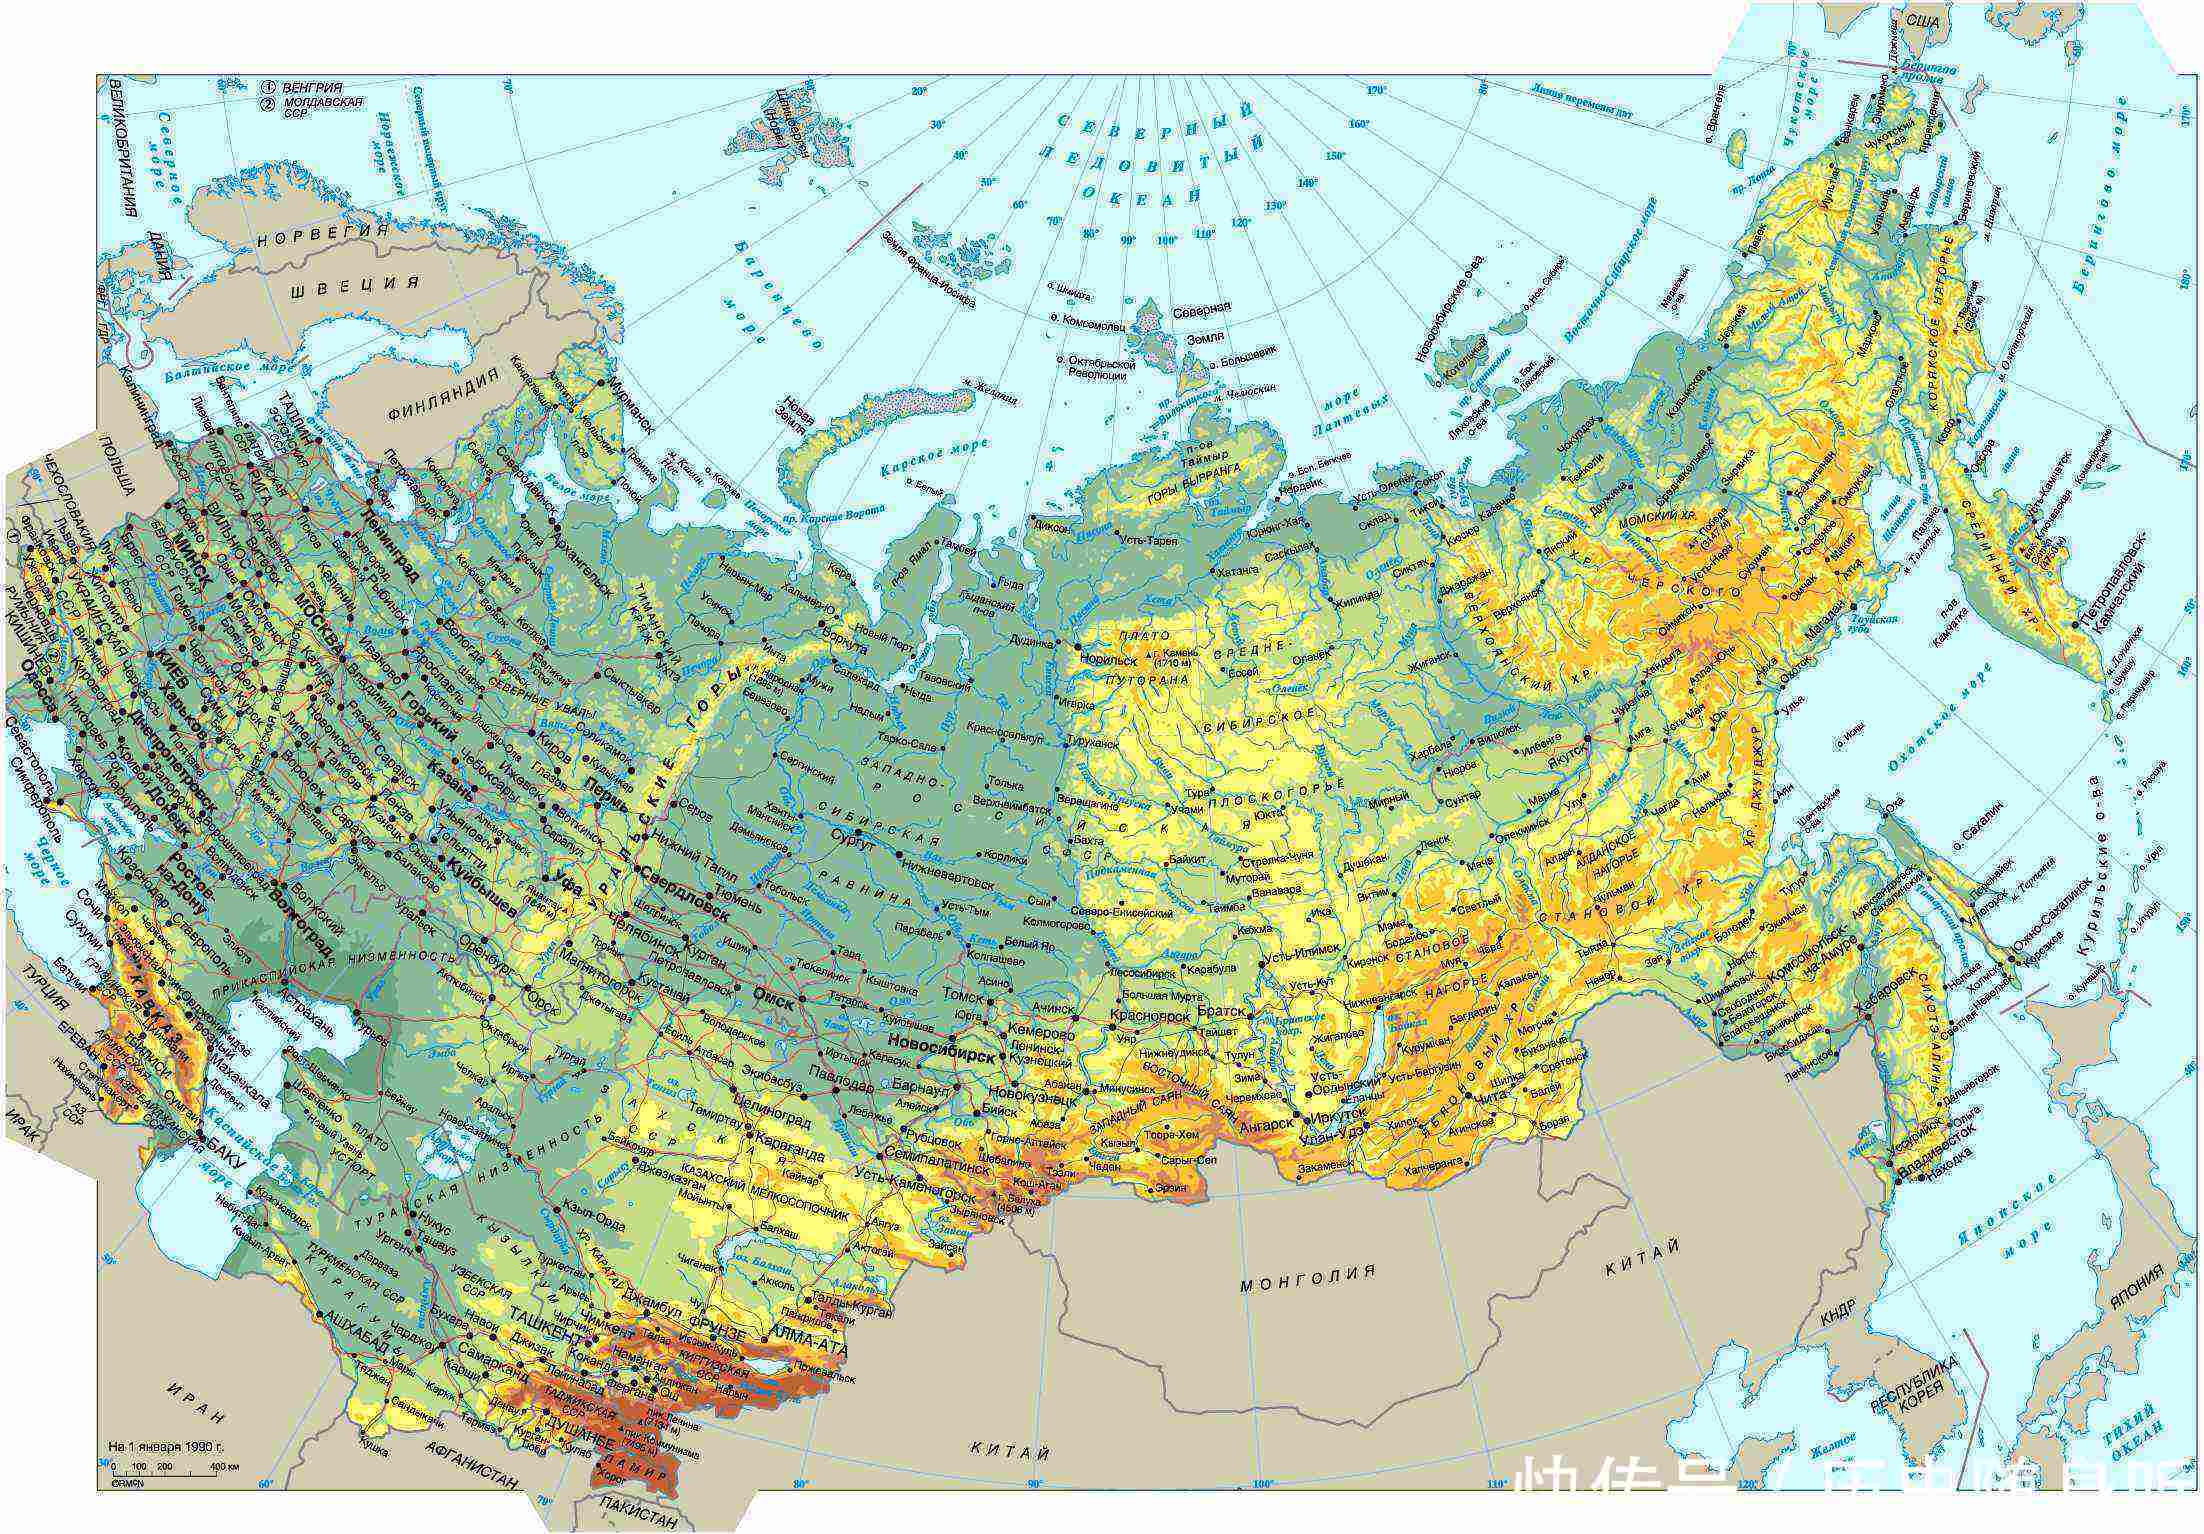 中国,美国,俄罗斯三国对比,三个国家的地缘环境